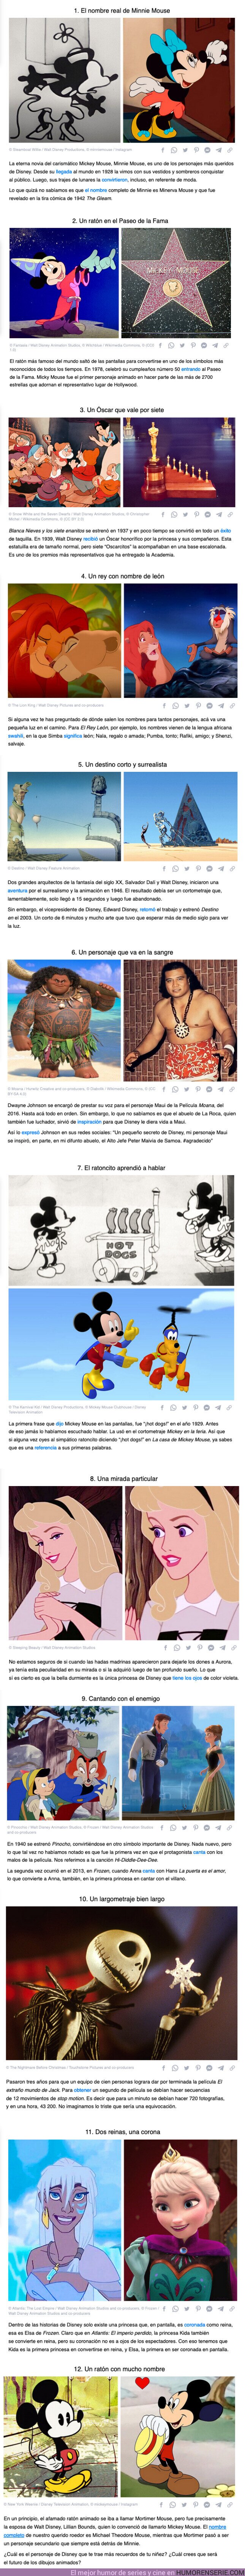 106900 - GALERÍA: 12 Detalles de personajes de Disney que solo el espejo mágico de Blanca Nieves podría revelar